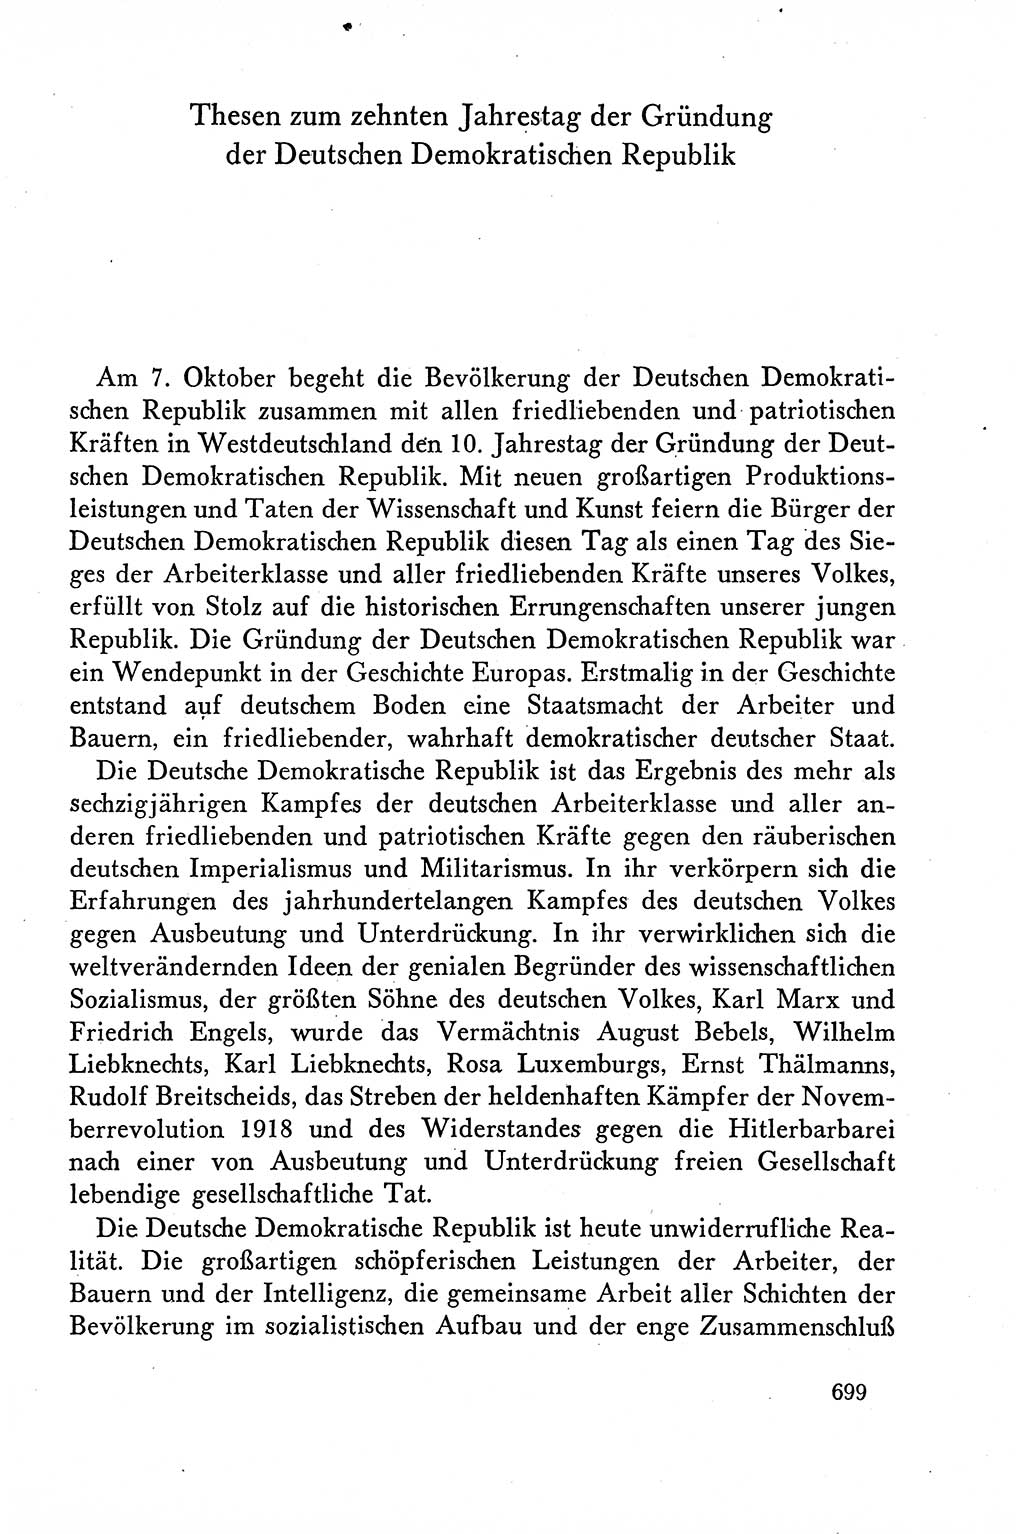 Dokumente der Sozialistischen Einheitspartei Deutschlands (SED) [Deutsche Demokratische Republik (DDR)] 1958-1959, Seite 699 (Dok. SED DDR 1958-1959, S. 699)